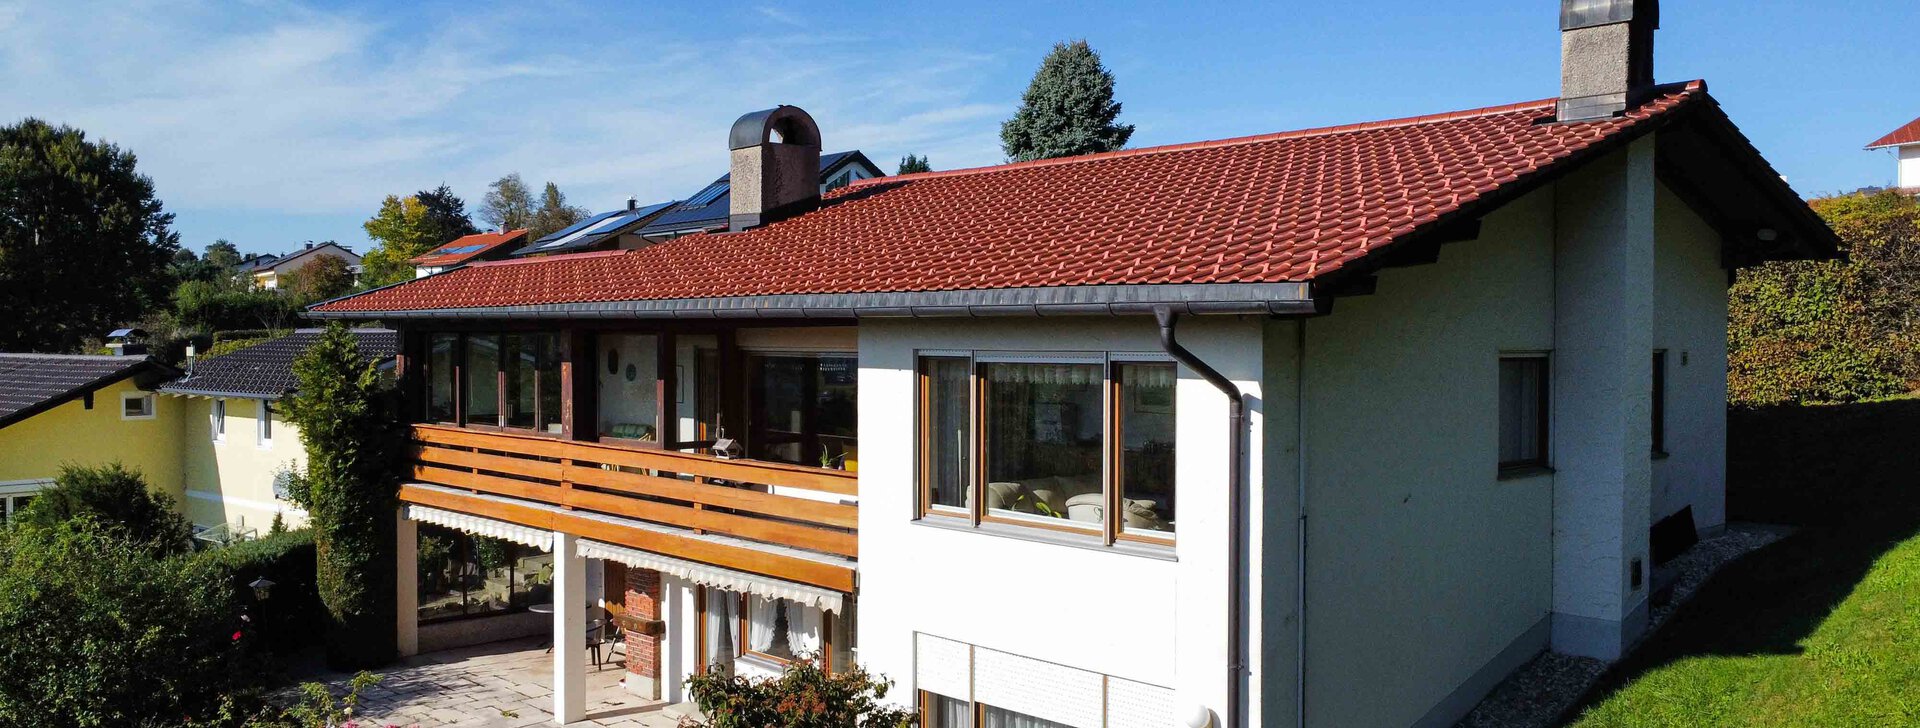 Außenansicht, Immobilie kaufen, Einfamilienhaus Wartberghöhe Traunstein | © HausBauHaus GmbH